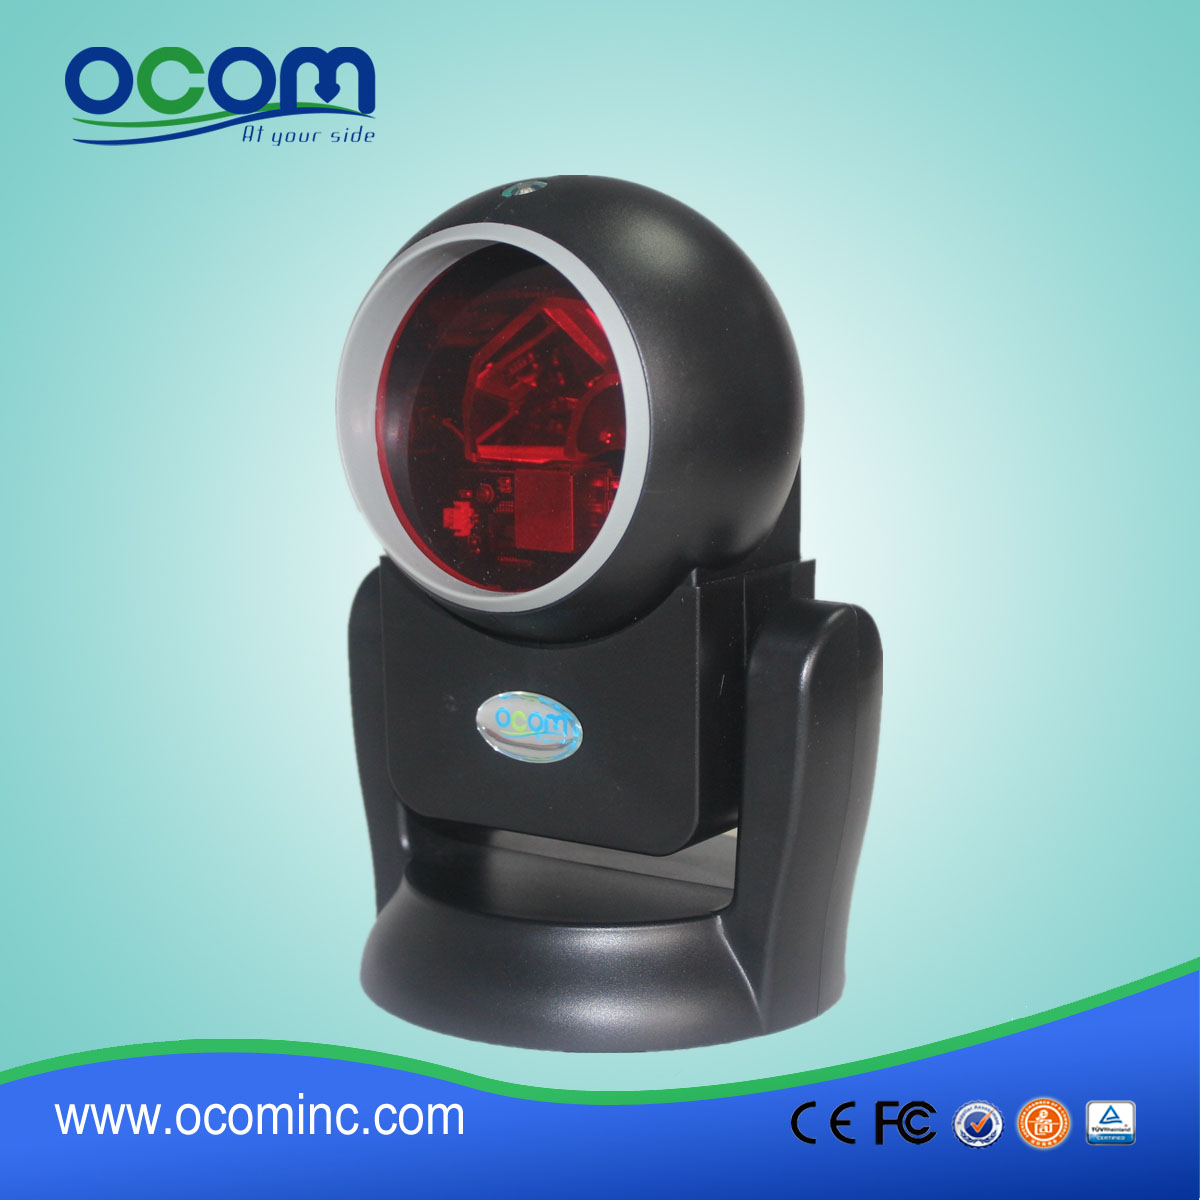 Πολλαπλών-Γραμμών Omni-Directional Barcode Scanners OCBs-T007